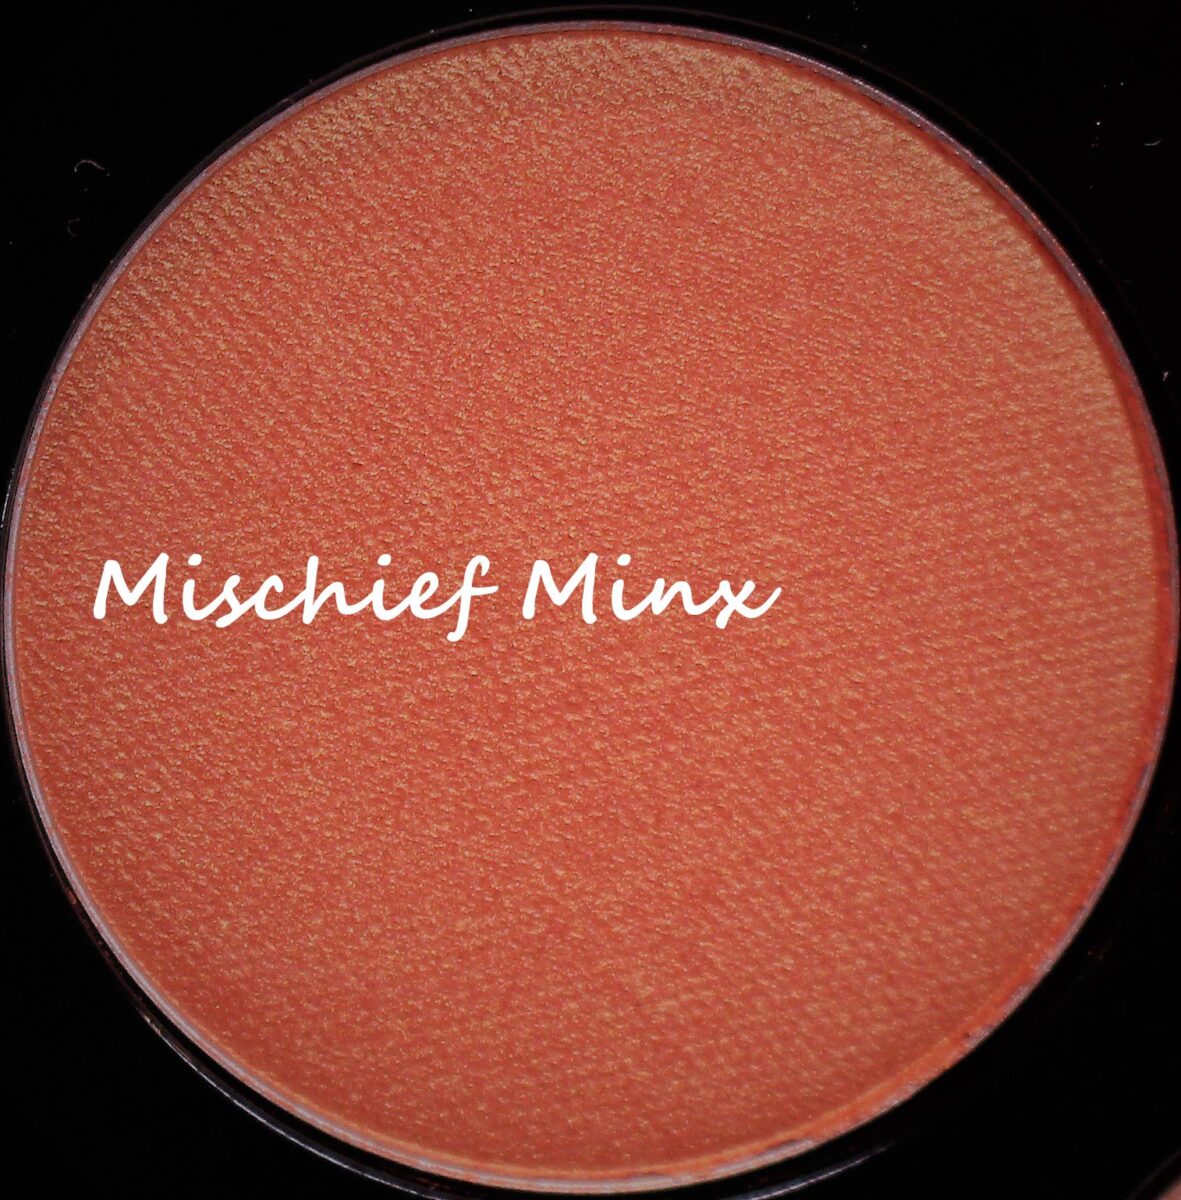 Mac-mischief-minx-eyeshadow-palette-eye-shadow